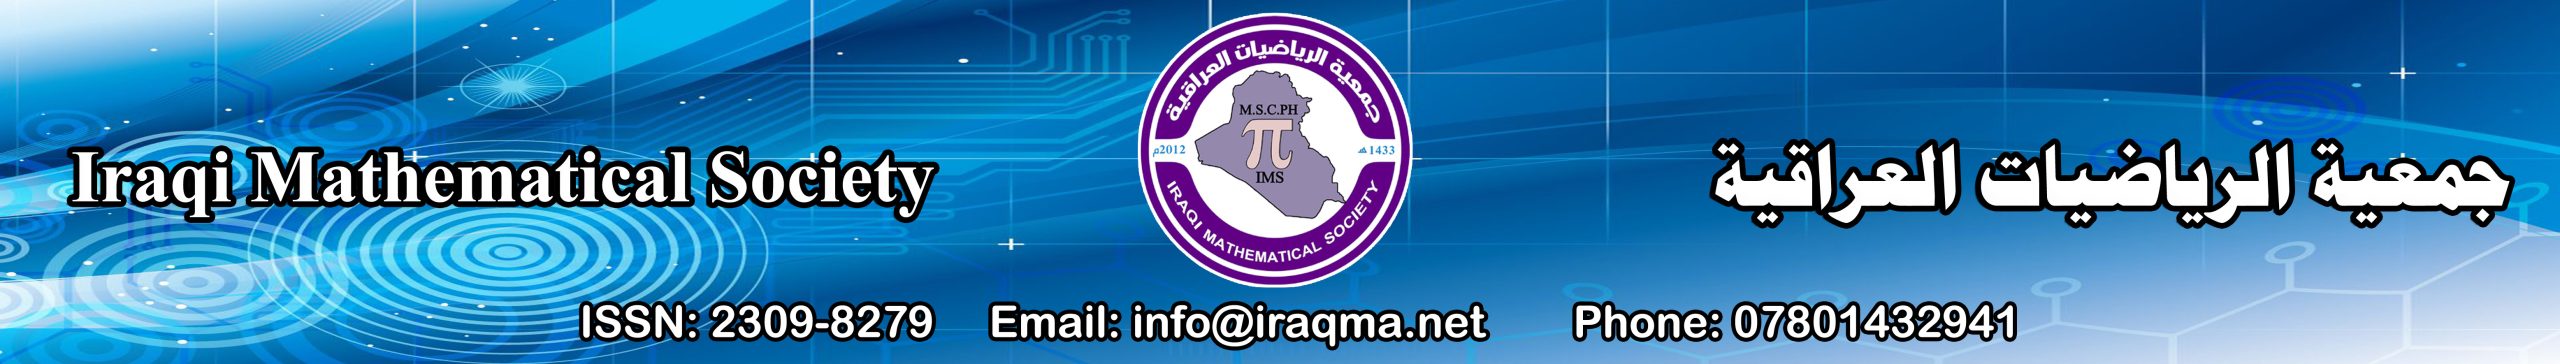 جمعية الرياضيات العراقية